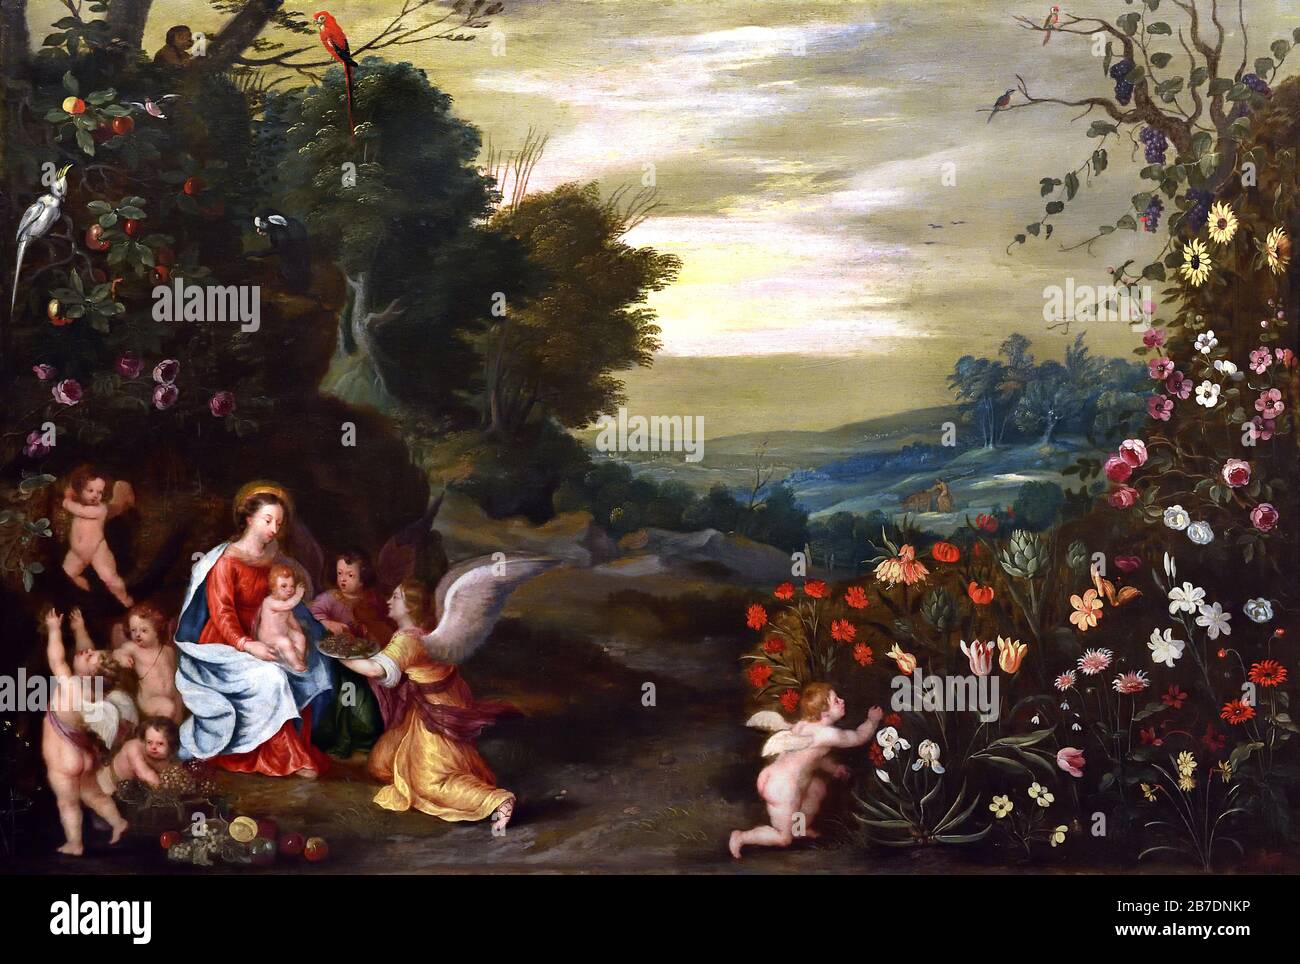 Madonna et enfant avec les Anges dans un paysage 1630 par Jan Brueghel le Jeune 1601-1678, la famille Brueghel ( Bruegel ou Breughel ), peintres flamands du XVIe au XVIIe siècle, belge, Belgique. Banque D'Images